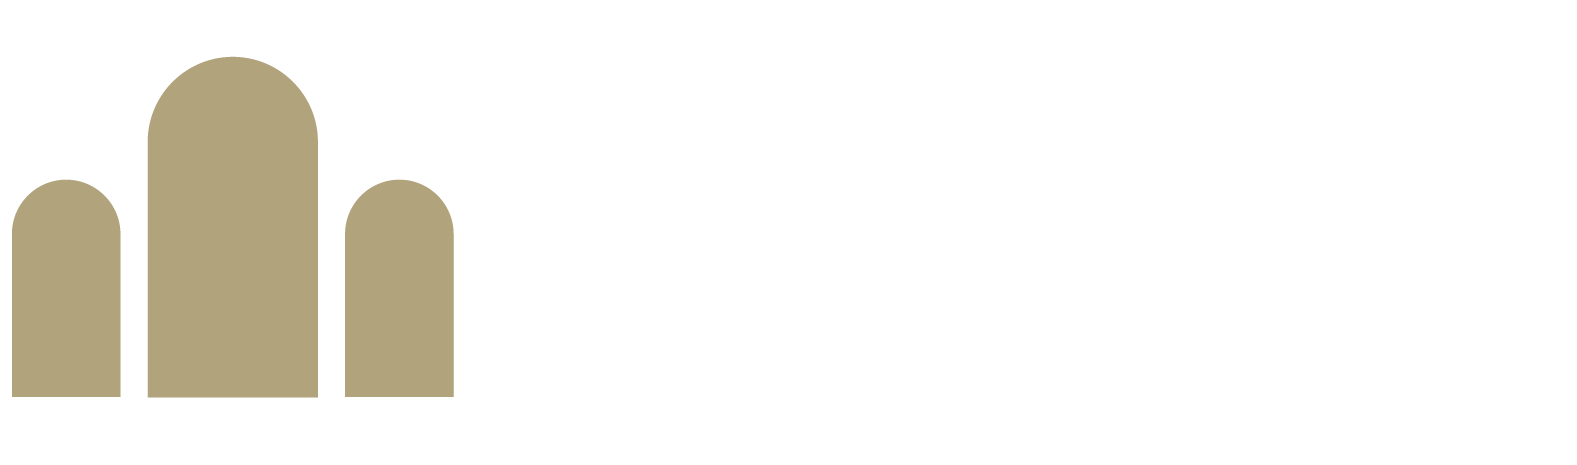 Palmyra Communications